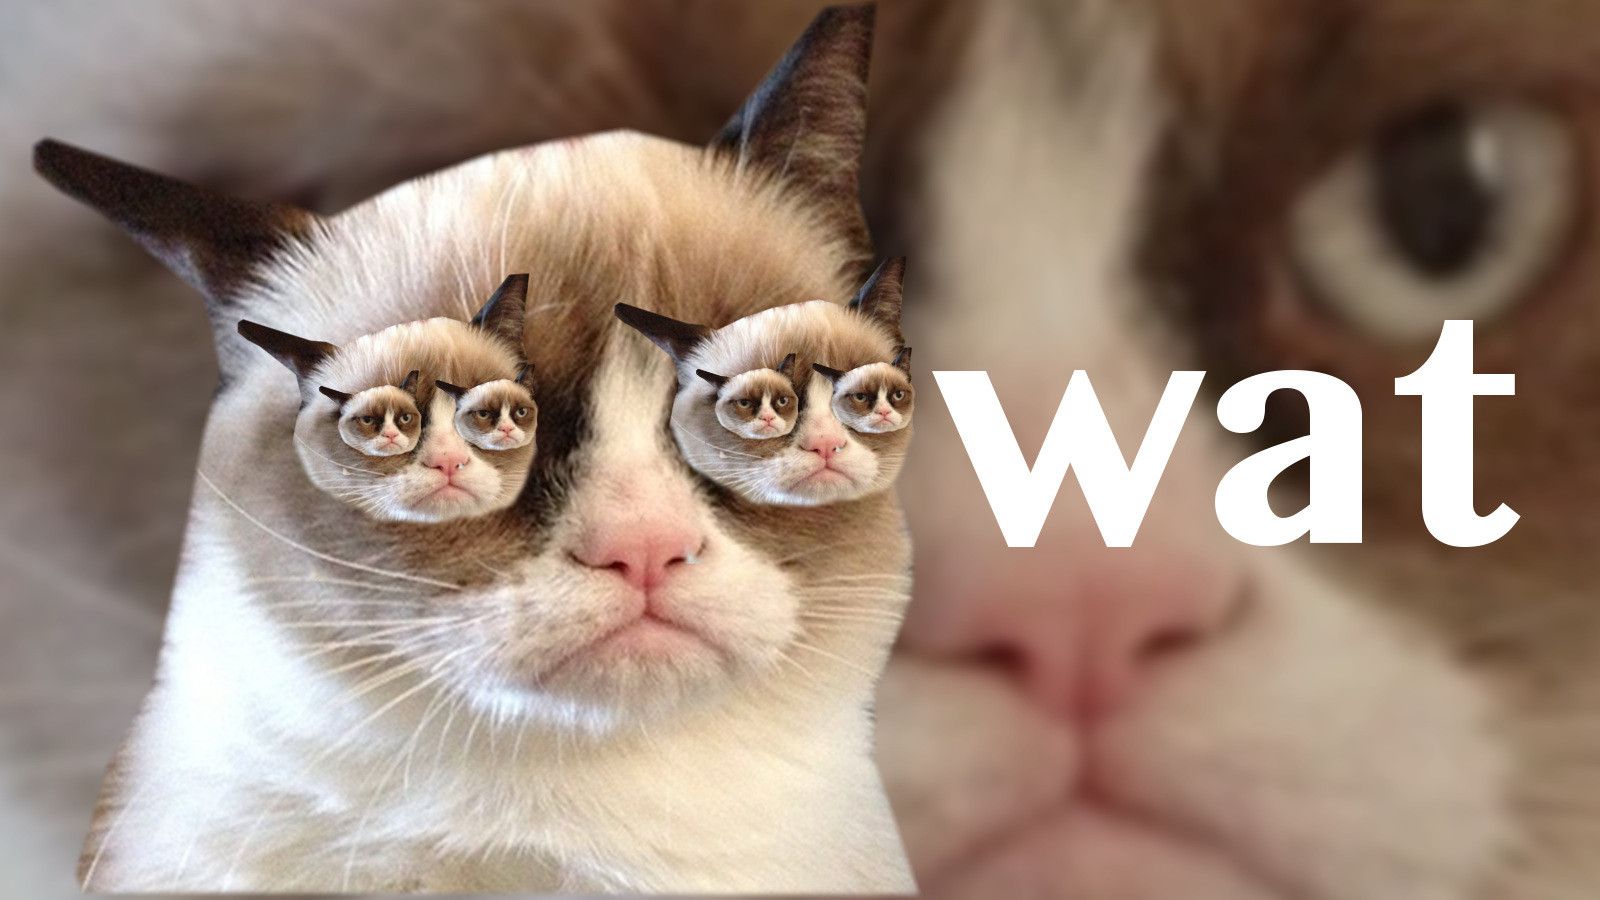 Grumpy Cat Wallpaper HD. Grumpy cat image, Cat memes clean, Grumpy cat meme